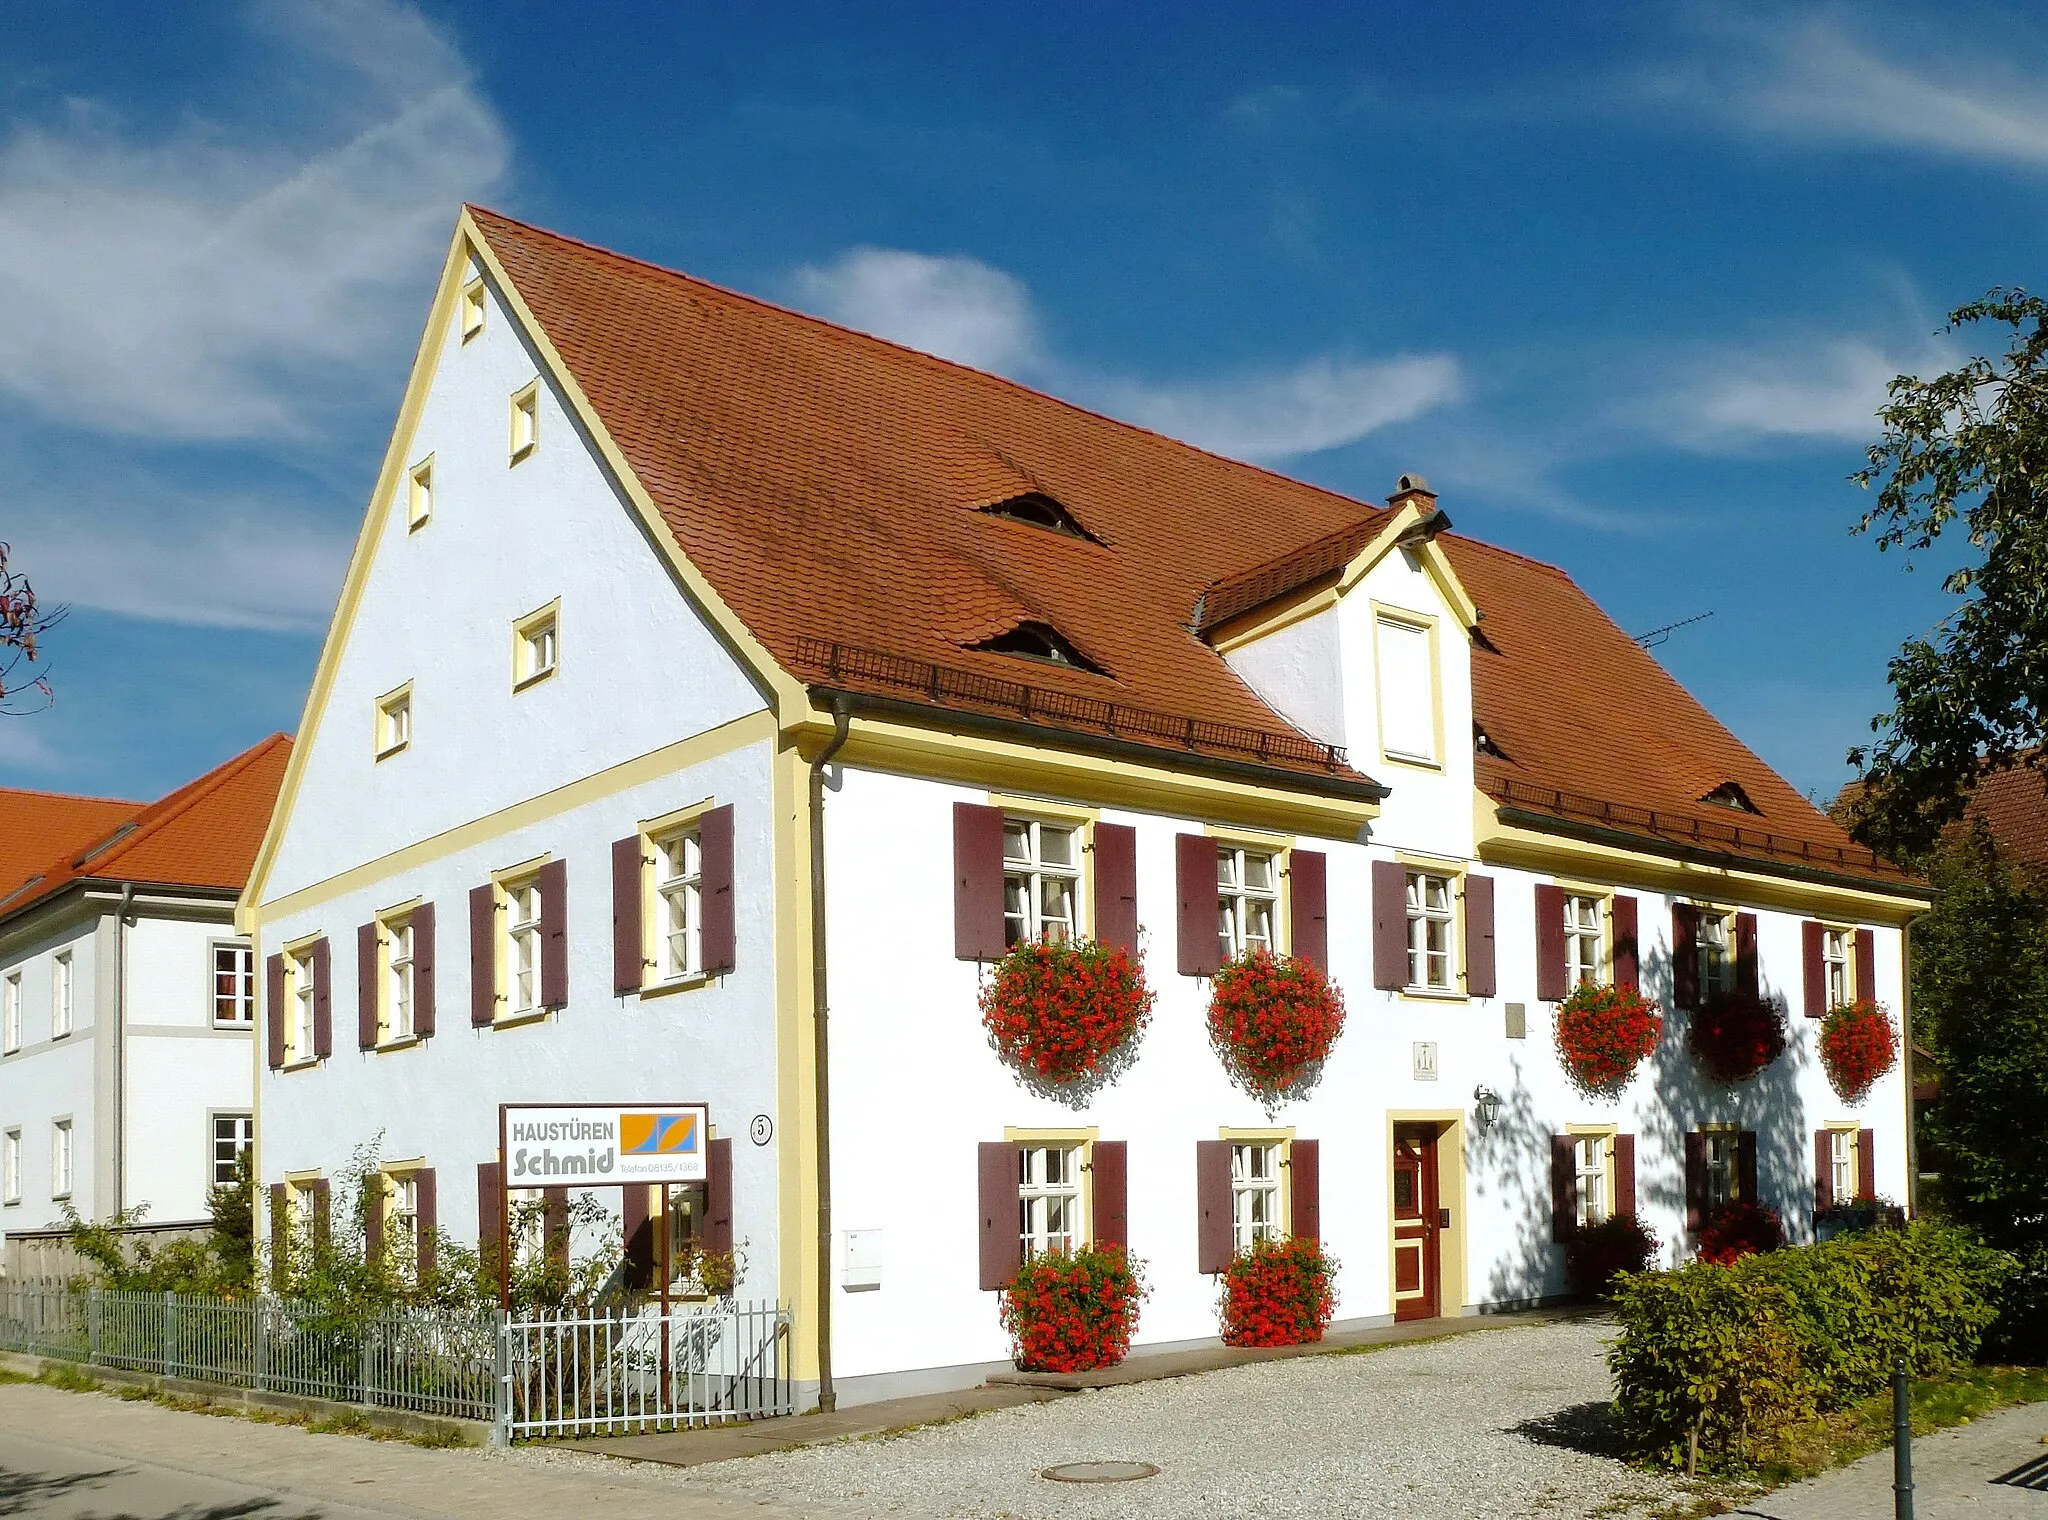 Photo showing: Sulzemoos, Kirchstr.5: Ehemaliges Pfarrhaus mit Dachauer Haustafel (mittig oberhalb der Eingangstür) und kleiner Sonnenuhr (rechts oberhalb der Eingangstür), Ansicht aus SW